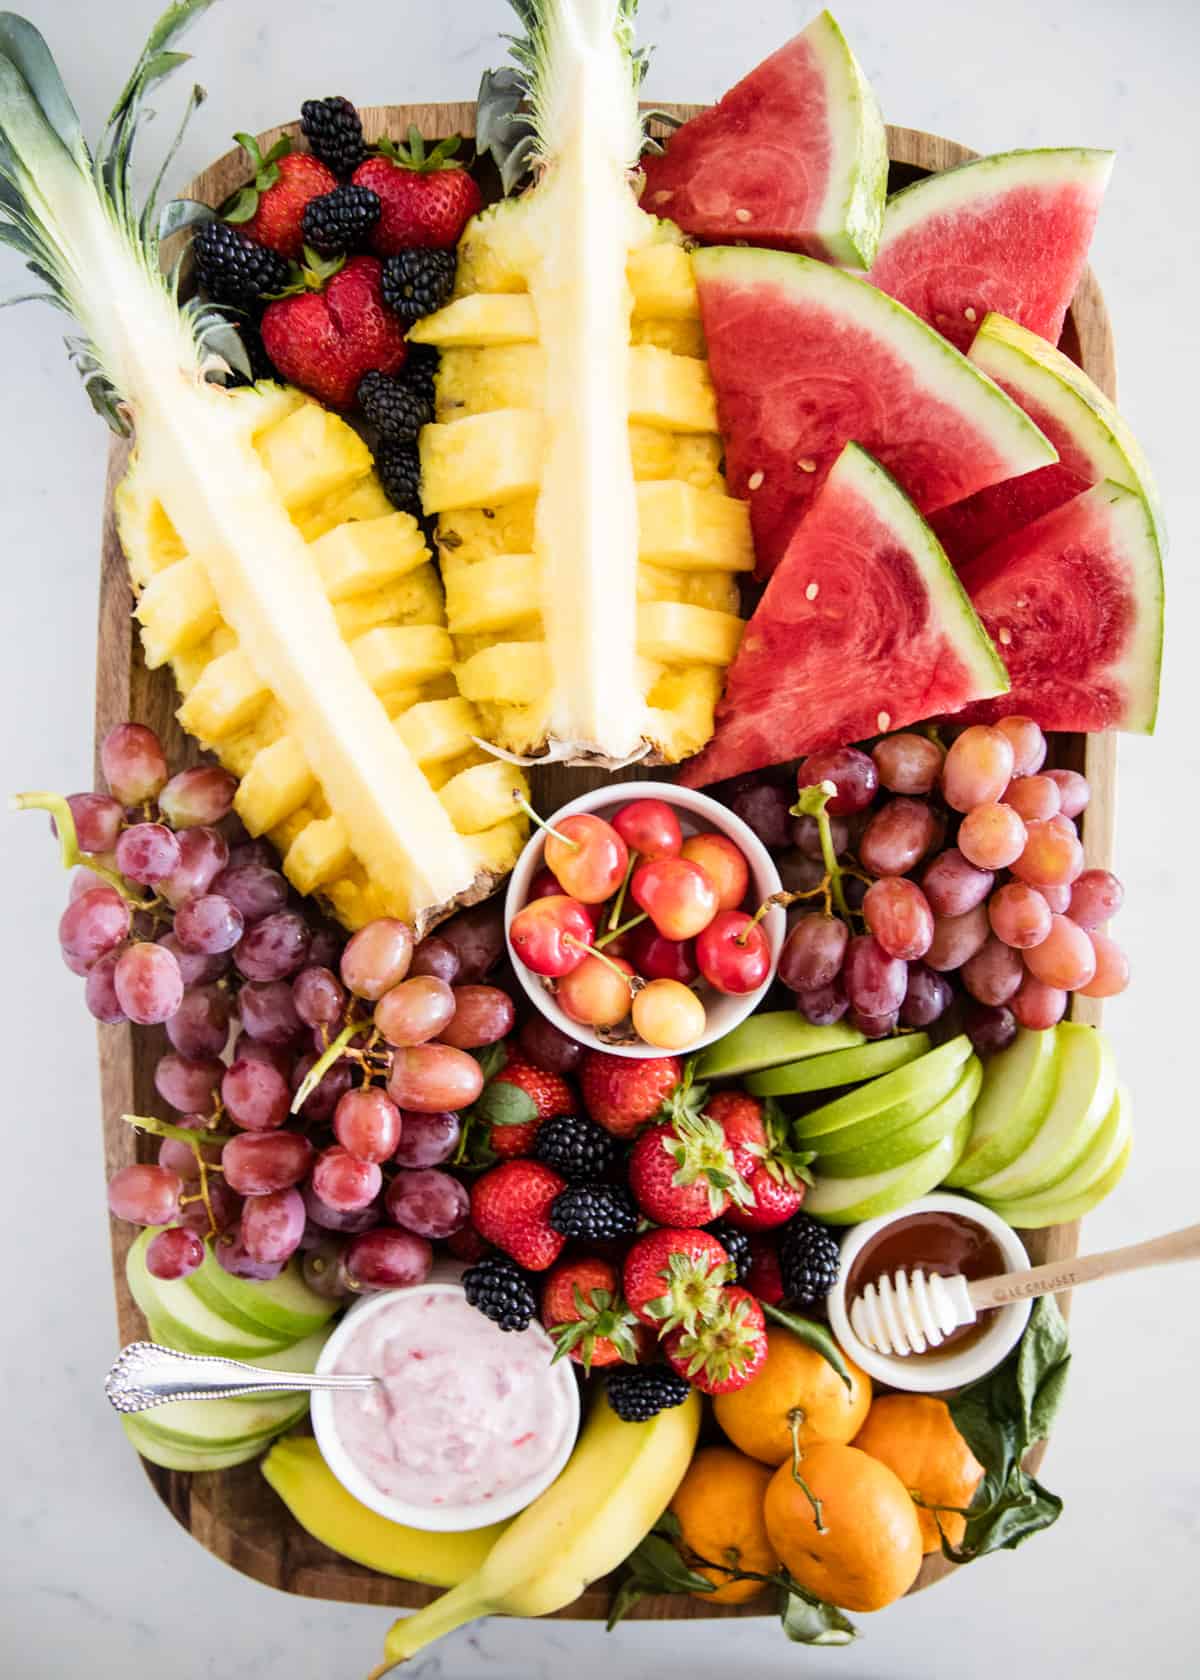 Fruit platter on wooden board.